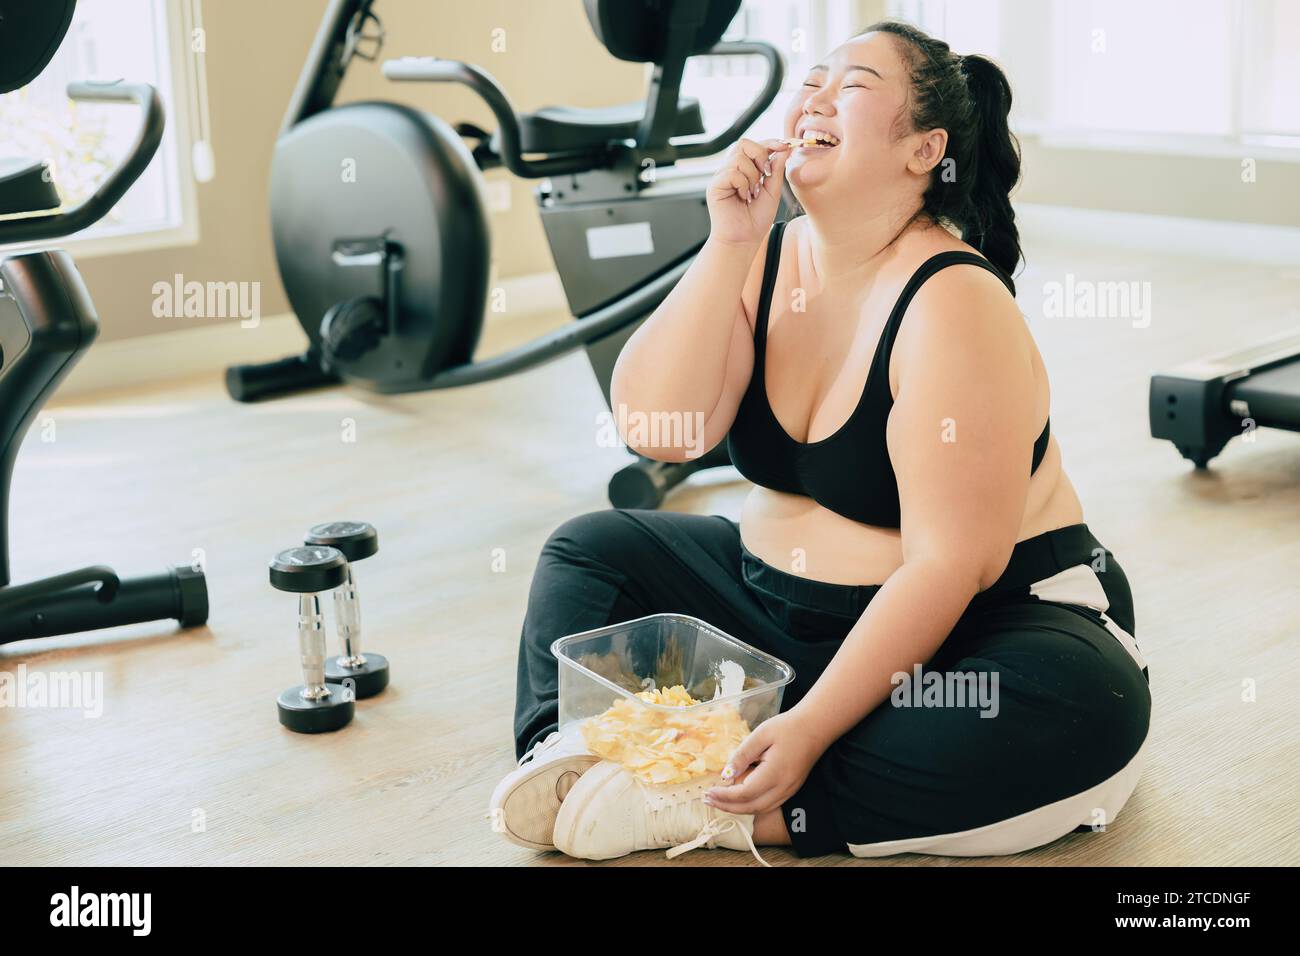 Disturbo del mangiare binge (LETTO), le donne grasse felici ridono goditi il cibo inarrestabile di patatine fritte durante il relax frenate dall'esercizio nel fitness club sportivo. Foto Stock